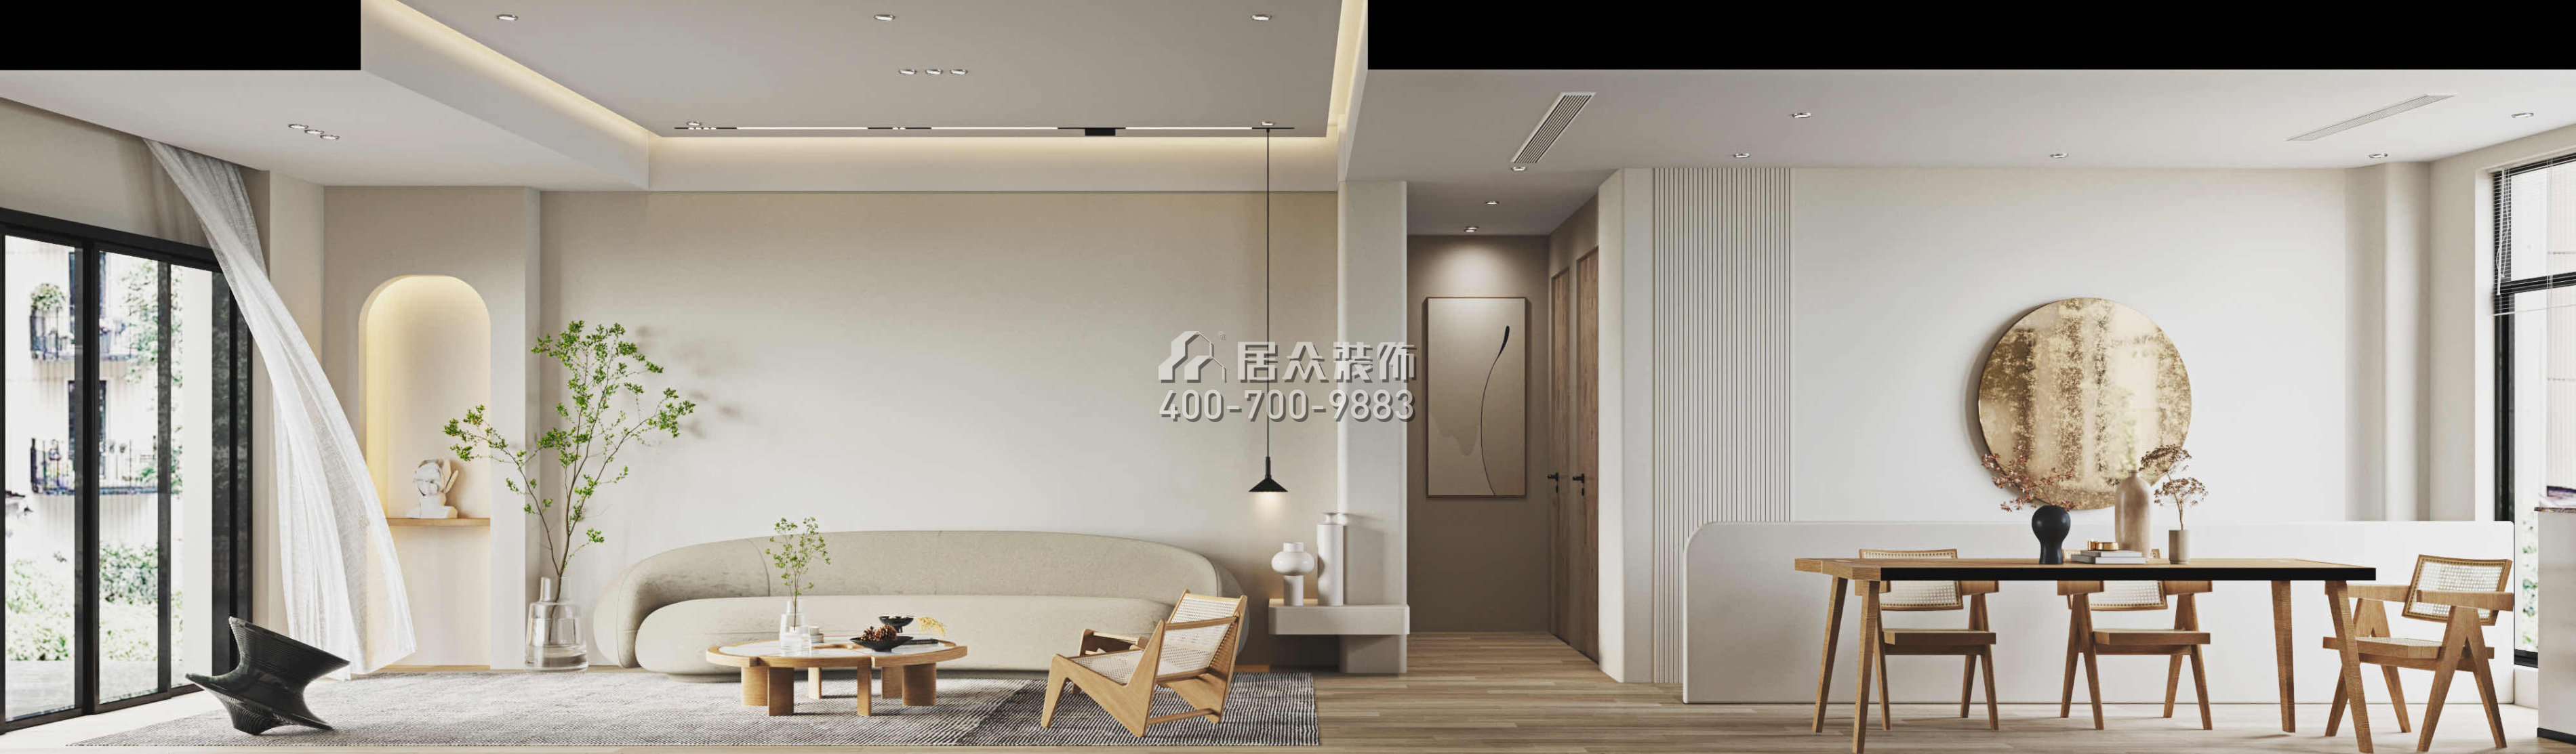 翠湖香山別苑320平方米現代簡約風格復式戶型客廳裝修效果圖